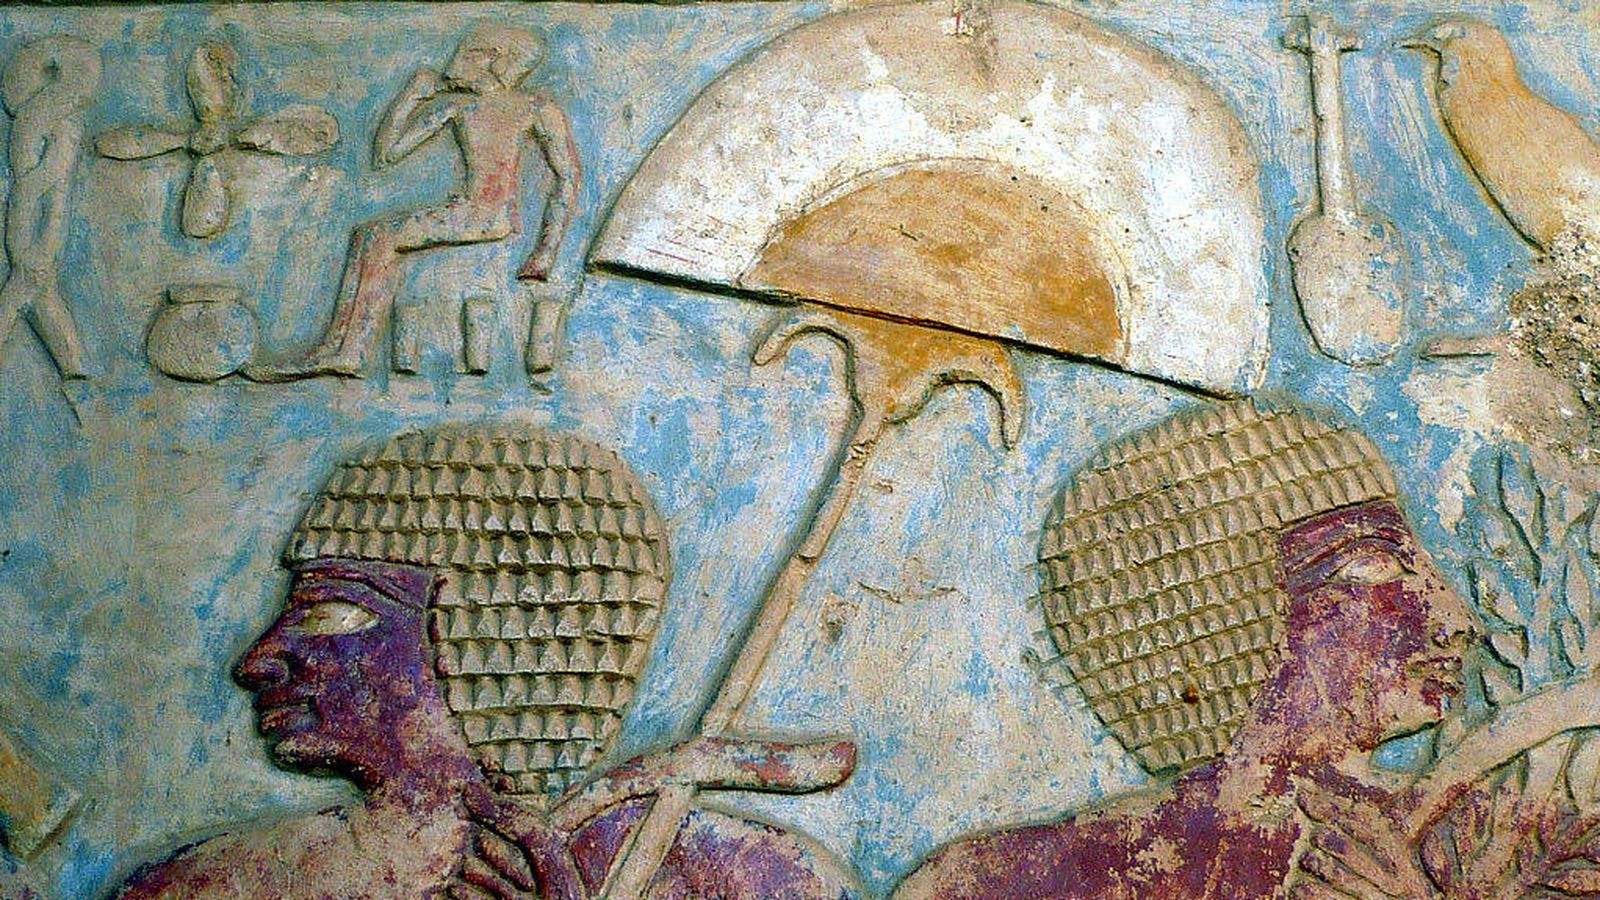 Imagen en relieve de una sombrilla egipcia usada como parasol y abanico por igual. Fuente: Wikipedia.